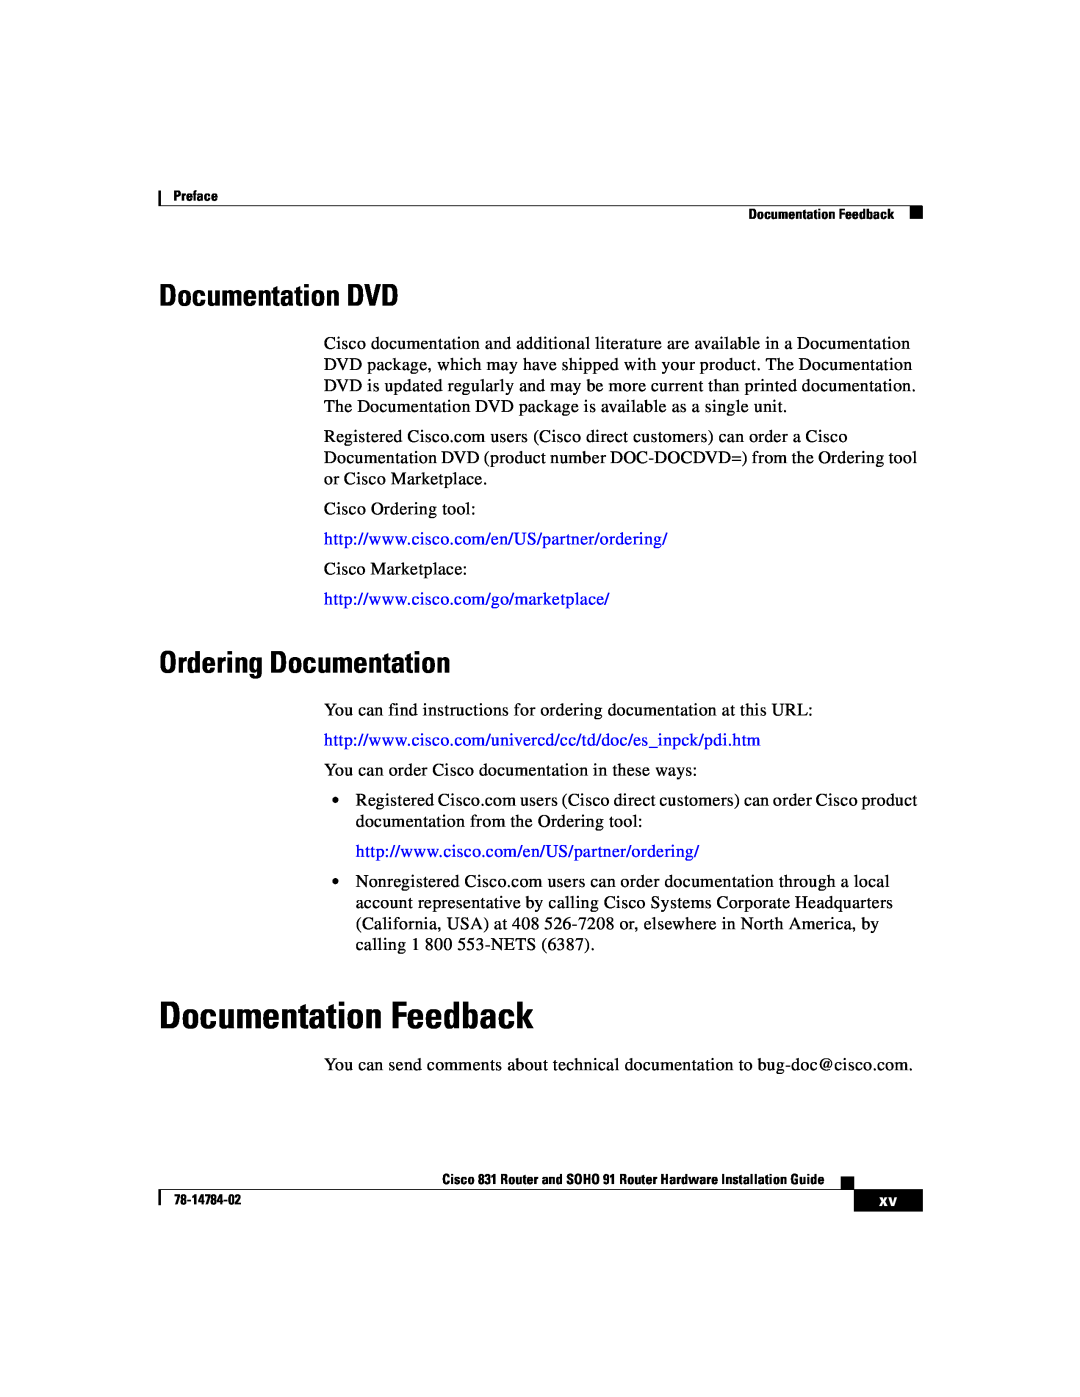 Cisco Systems 78-14784-02 manual Documentation Feedback, Documentation DVD, Ordering Documentation 